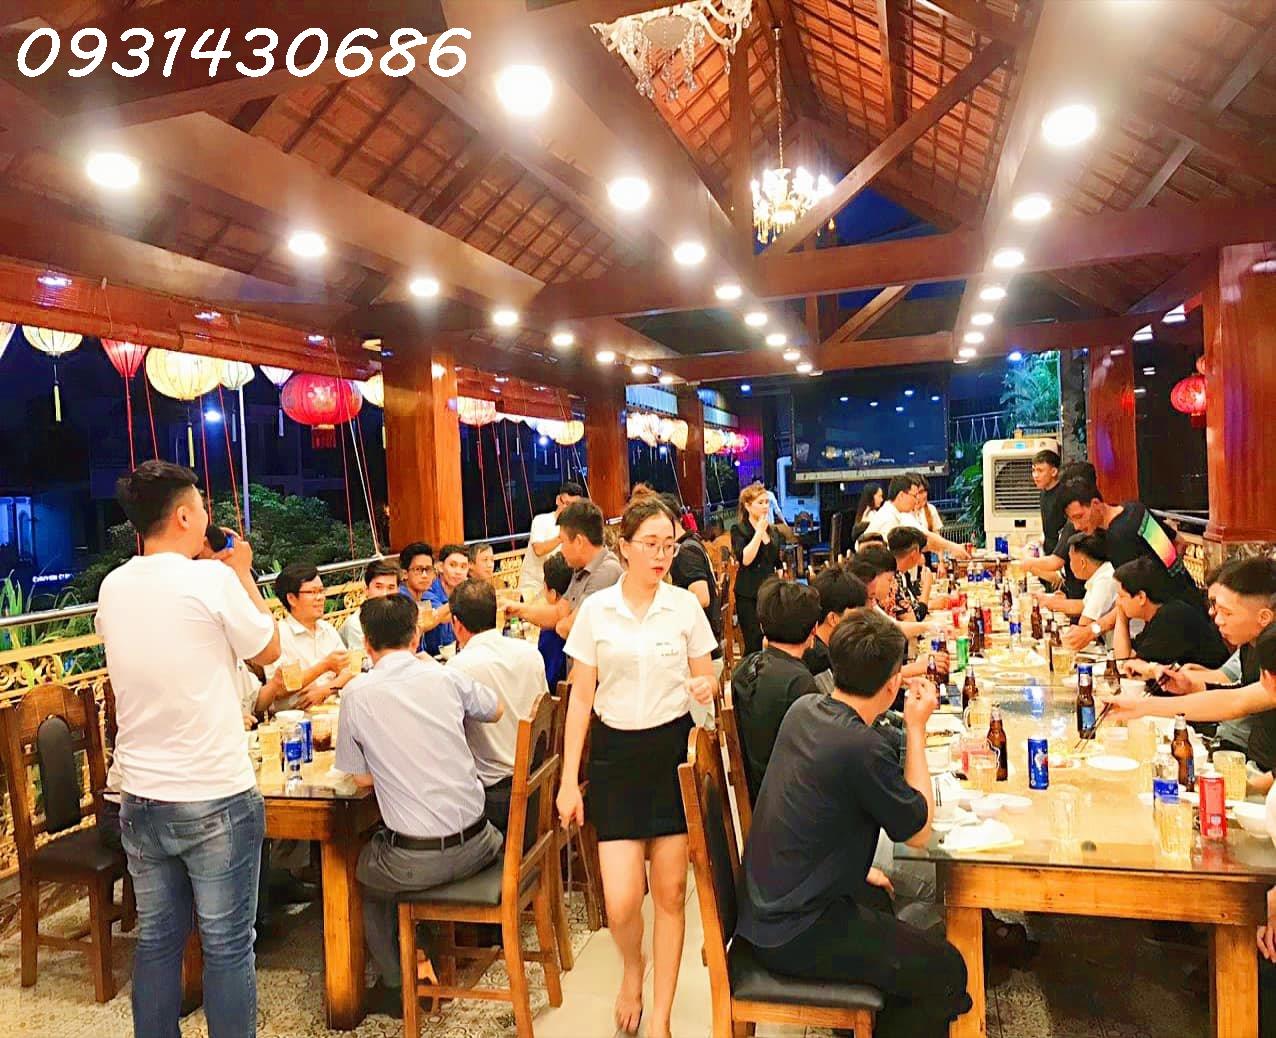 Bán  Nhà hàng karaoke Nice VIP - Vị trí Vàng tại 28 Khổng Tử, Bình Thọ KP 03, Thủ Đức lh 0931430686 2